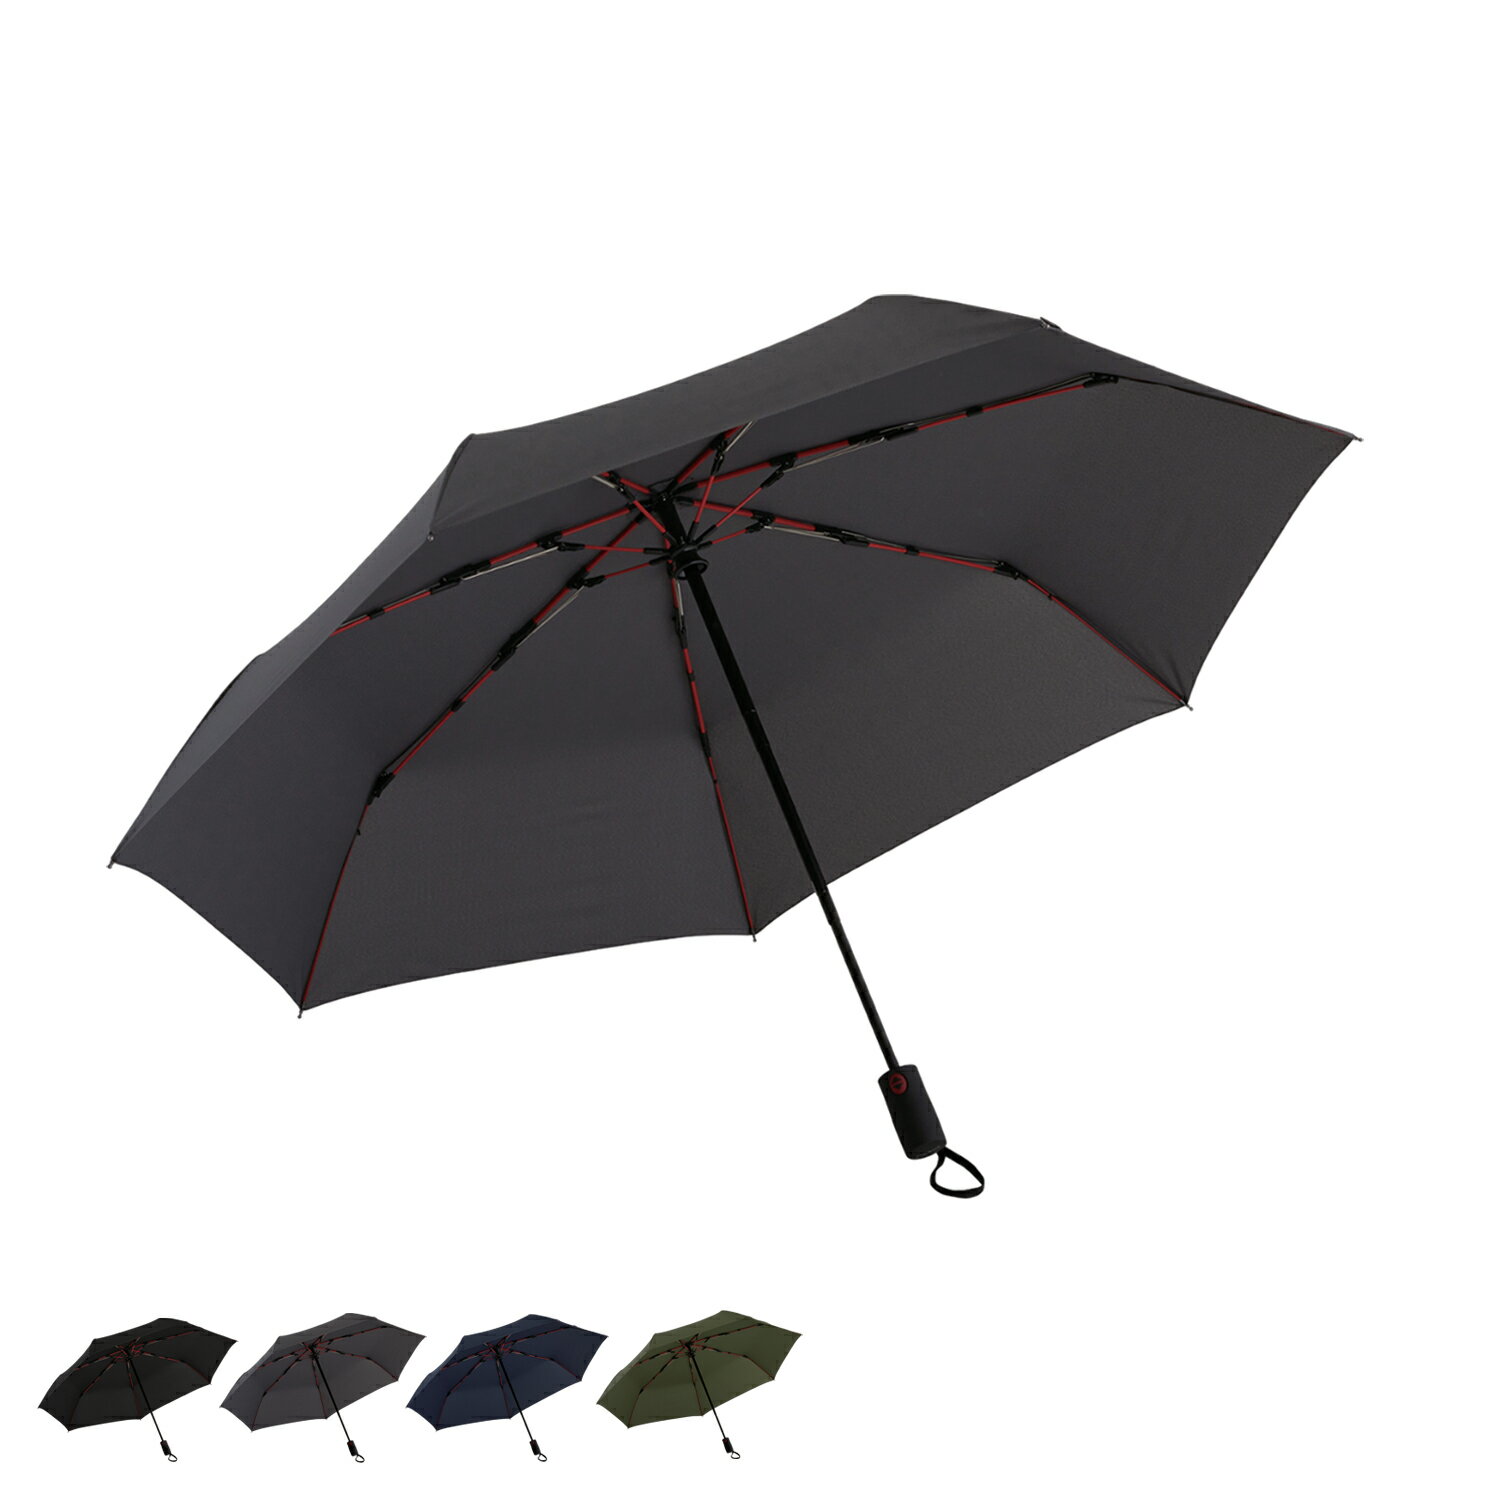 マブ 折りたたみ傘 メンズ mabu マブ 折りたたみ傘 雨傘 晴雨兼用 軽量 メンズ レディース 60cm ブラック グレー ネイビー カーキ 黒 SMV-4180